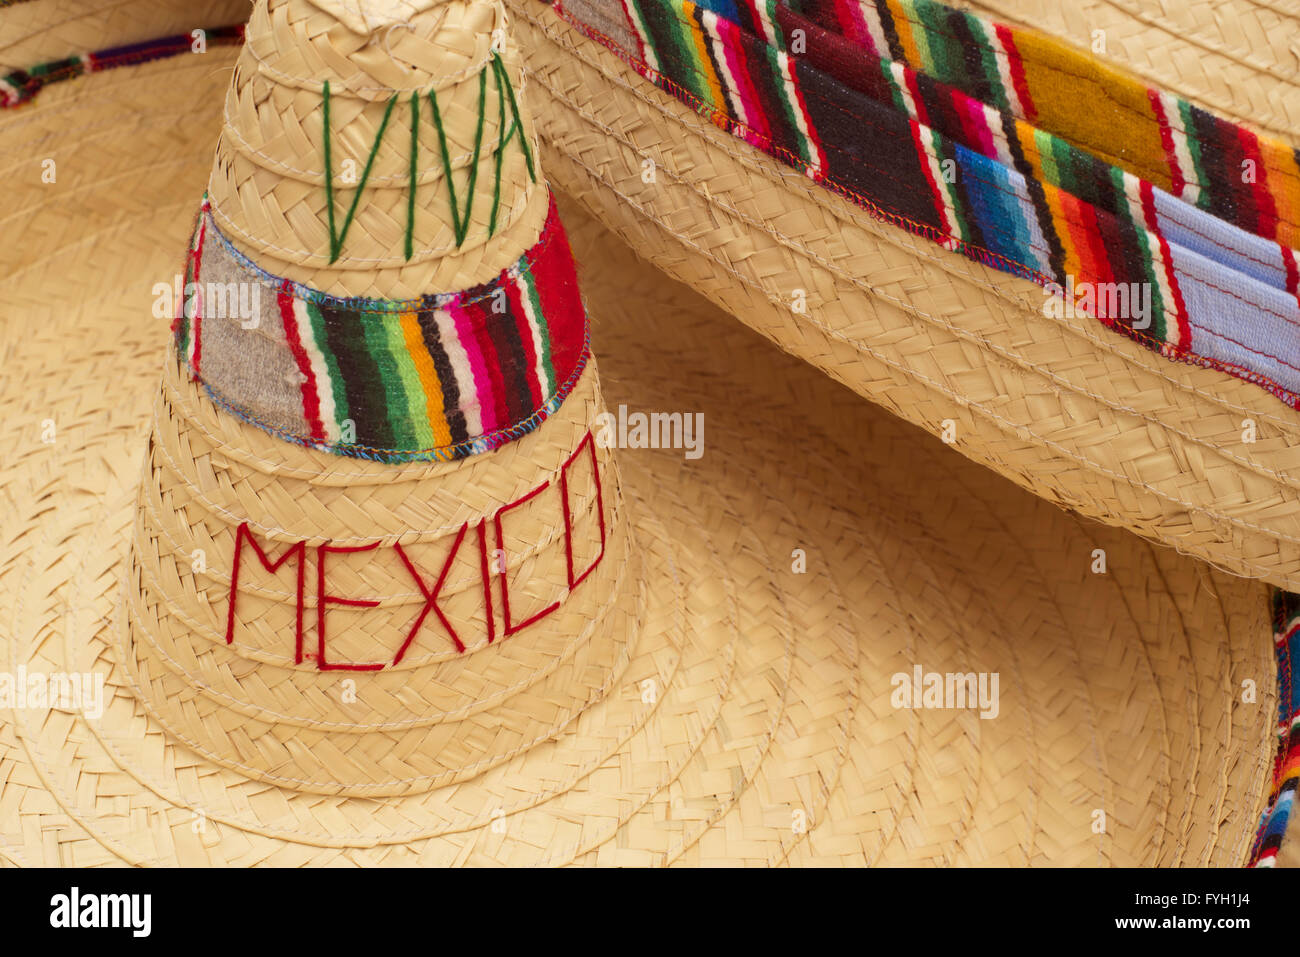 Sombrero messicano cappelli con decor colorato e viva messico citazione in strada del mercato display del negozio di souvenir. Foto Stock